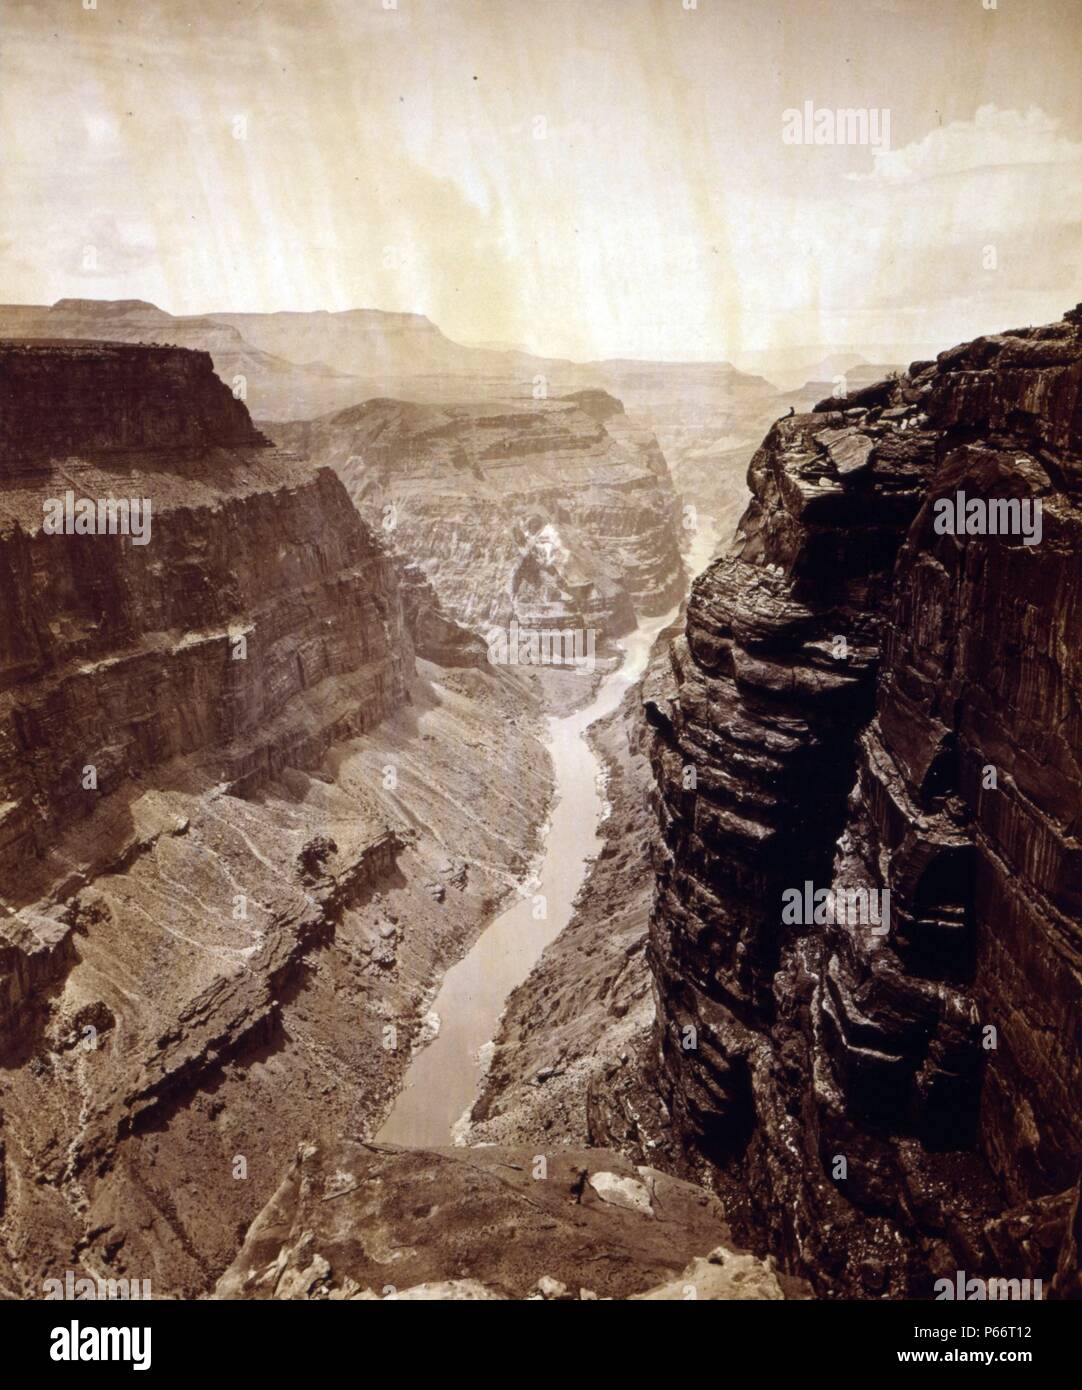 Il Grand Canyon del Fiume Colorado, guardando ad ovest da James Fennemore, 1849-1941, fotografo 1872. Vista dalla cima del Grand Canyon. Uomo seduto sulla battuta è John Hillers. Foto Stock